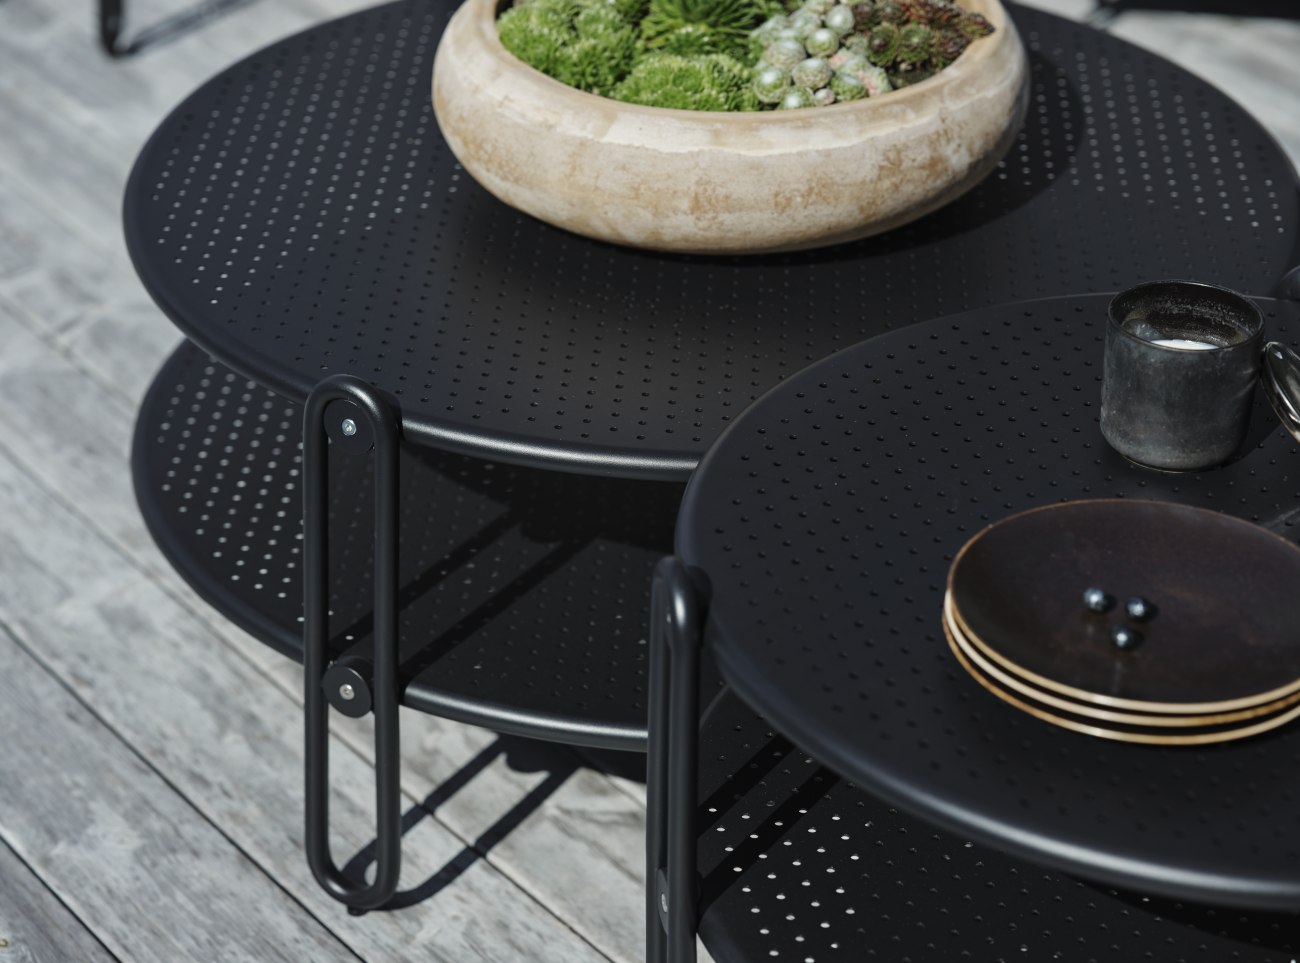 Der Gartencouchtisch Blixt überzeugt mit seinem modernen Design. Gefertigt wurde die Tischplatte aus Metall und besitzt einen schwarzen Farbton. Das Gestell ist auch aus Metall und hat eine schwarze Farbe. Der Tisch besitzt eine Länger von 85 cm.